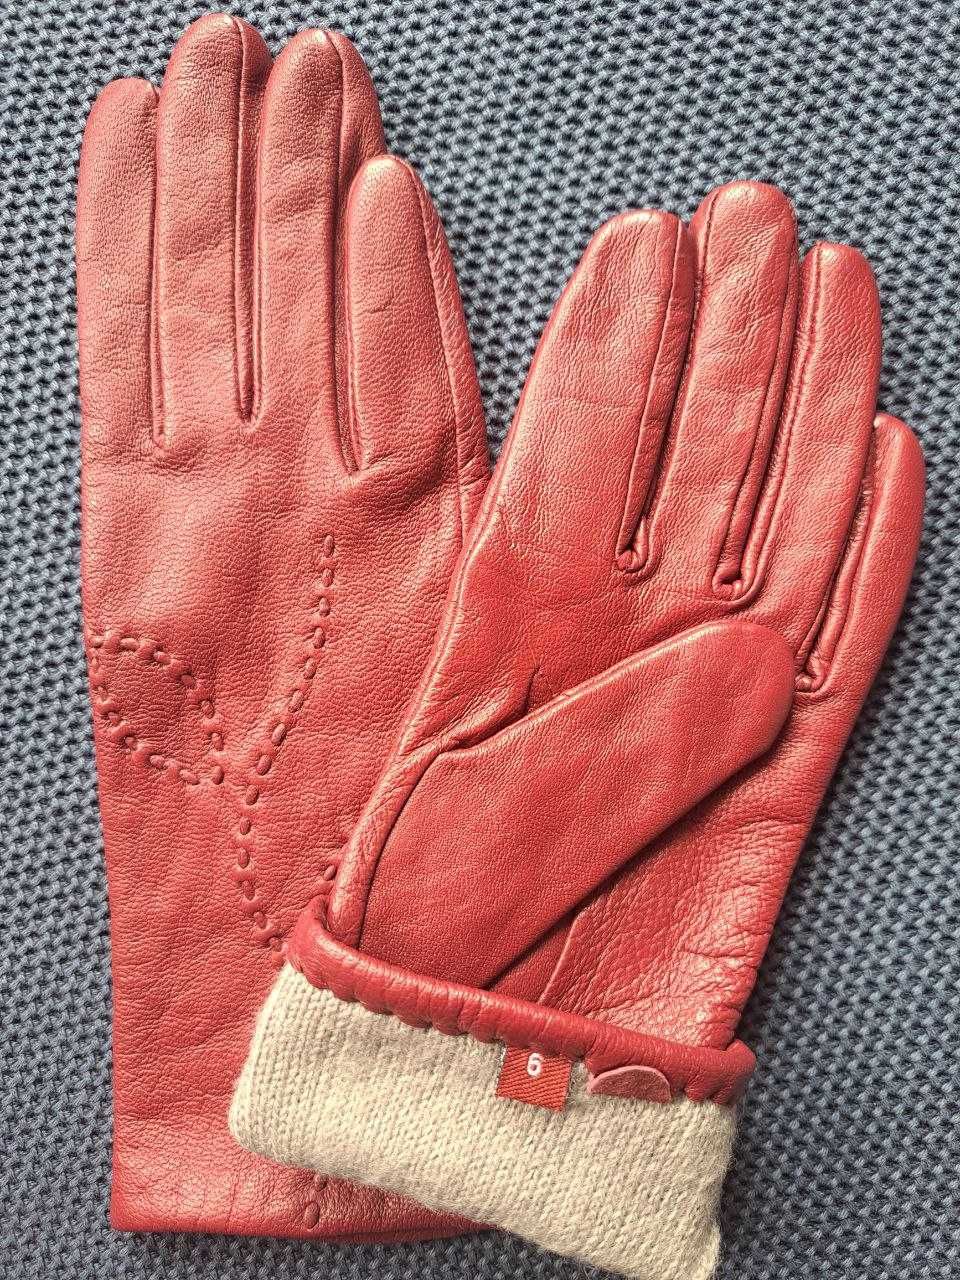 Kolorowe rękawiczki skórzane (kolor bordowy) , r. 6